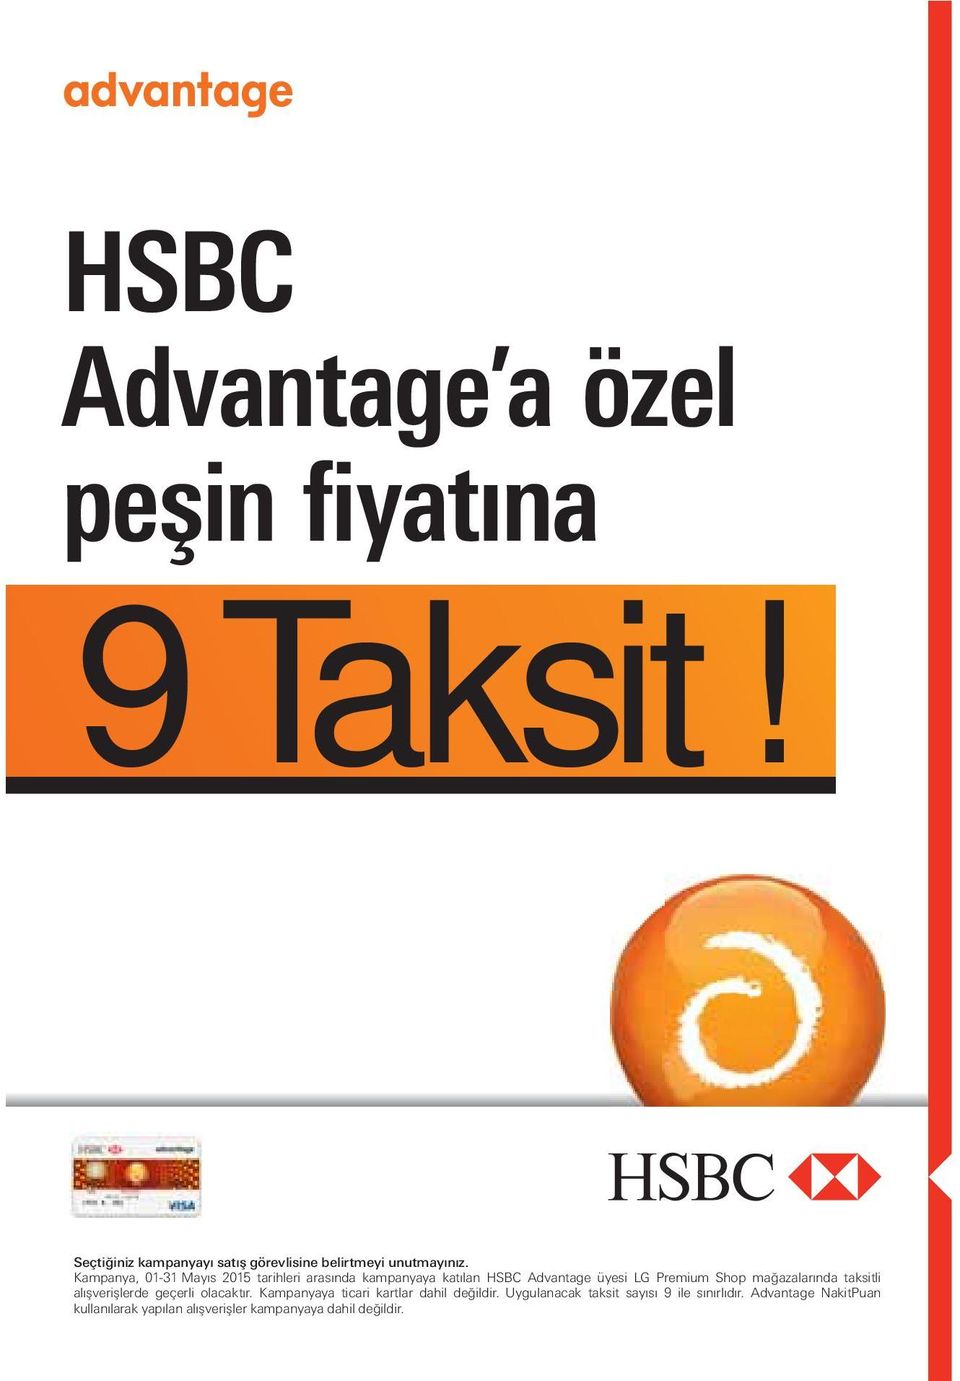 Kampanya, 01-31 Mayıs 2015 tarihleri arasında kampanyaya katılan HSBC Advantage üyesi LG Premium Shop